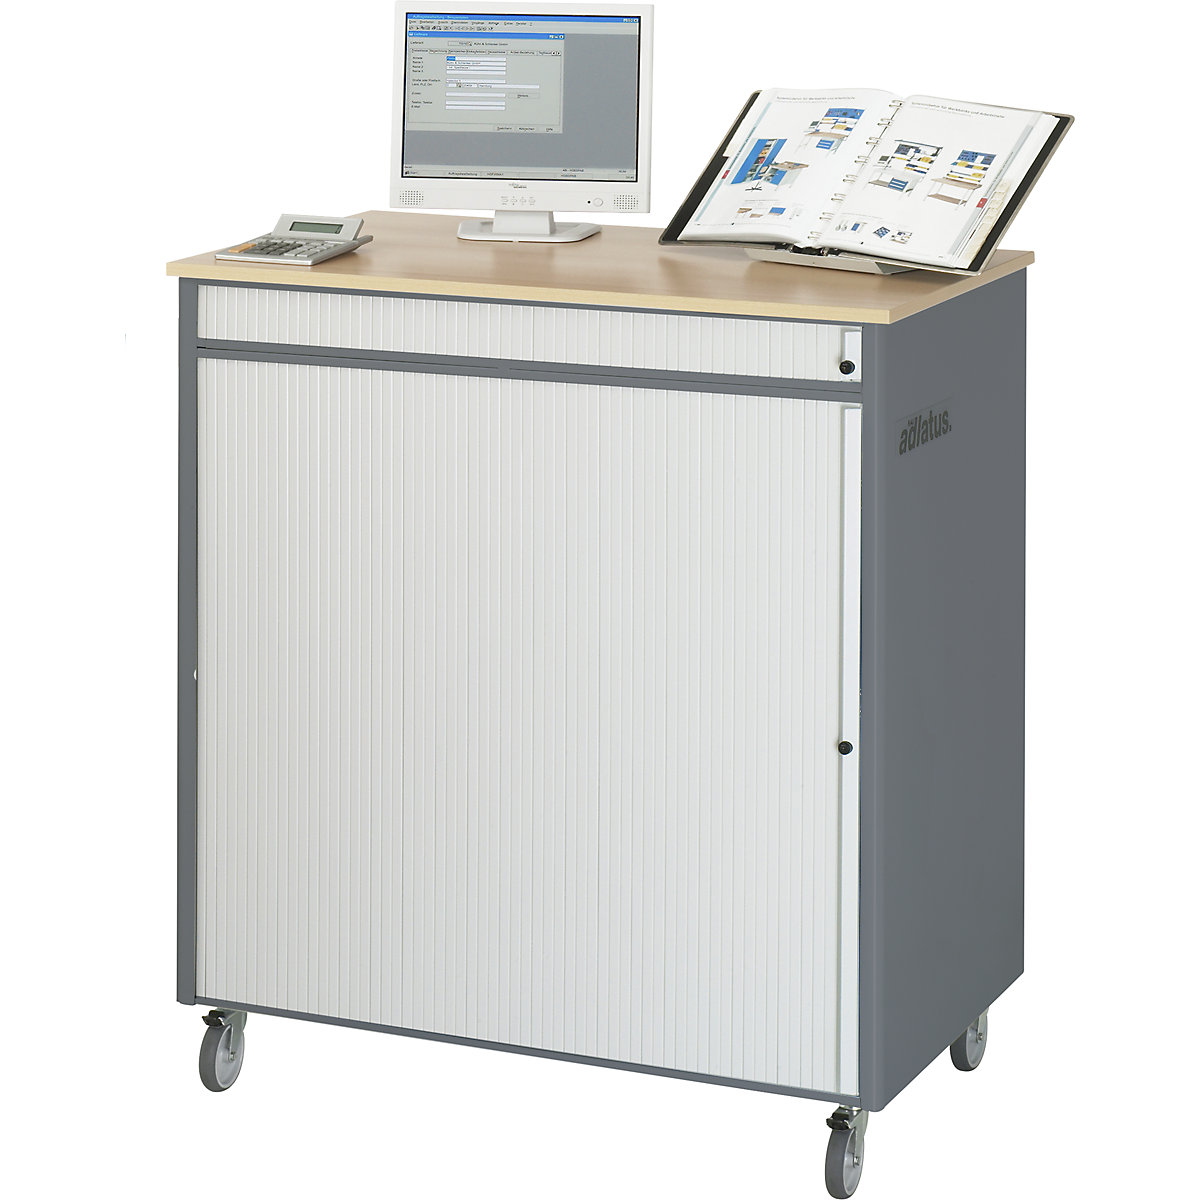 Počítačové pracoviště – RAU, v x š x h 1100 x 1030 x 660 mm, pojízdný, antracitová metalíza / enciánová modrá-12